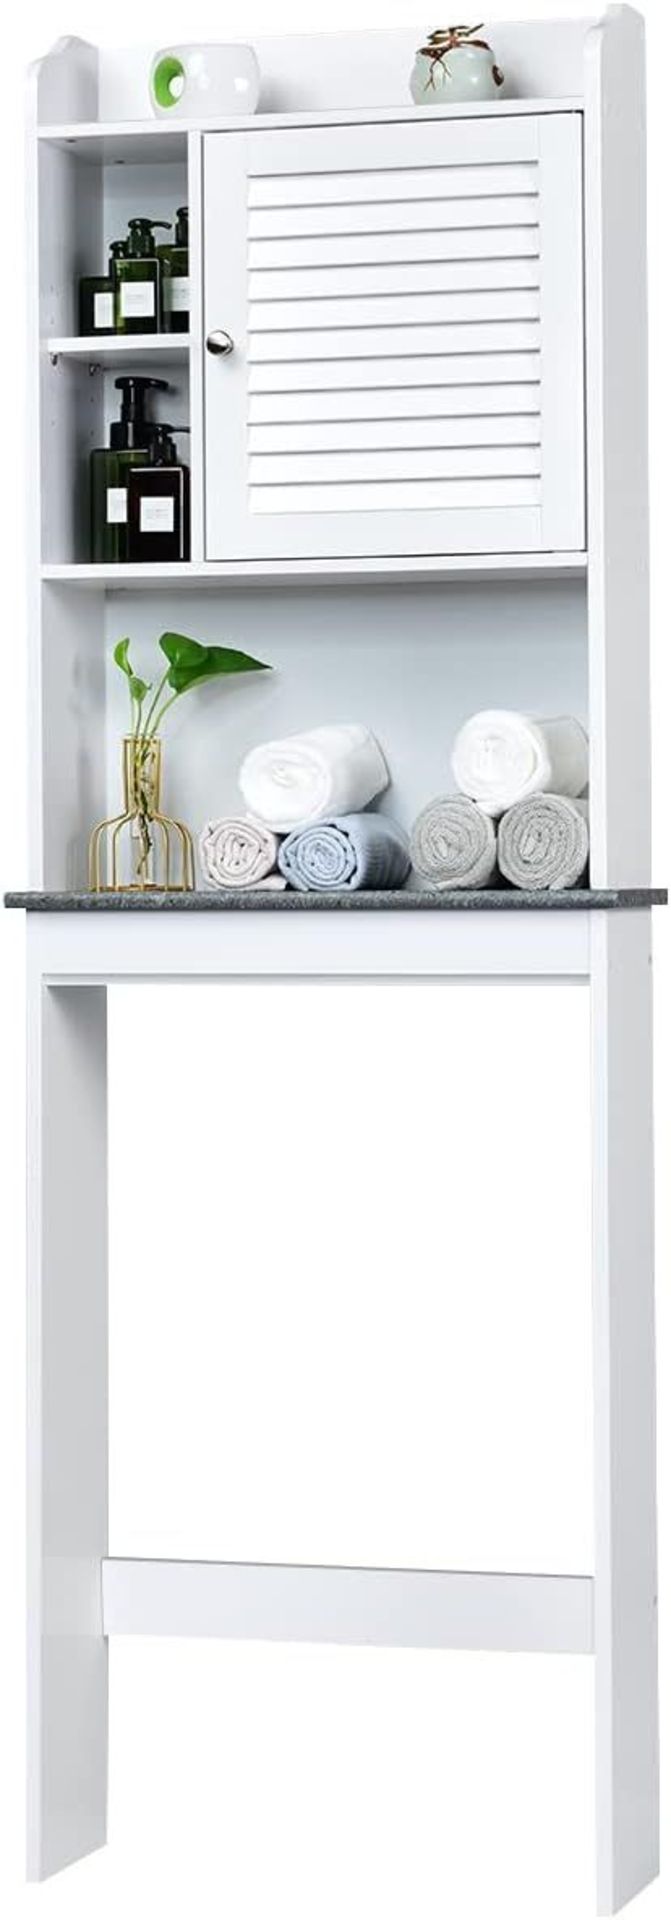 COSTWAY Over Toilet Cabinet, Freestanding Washing Machine Rack with Open Shelves and Door,